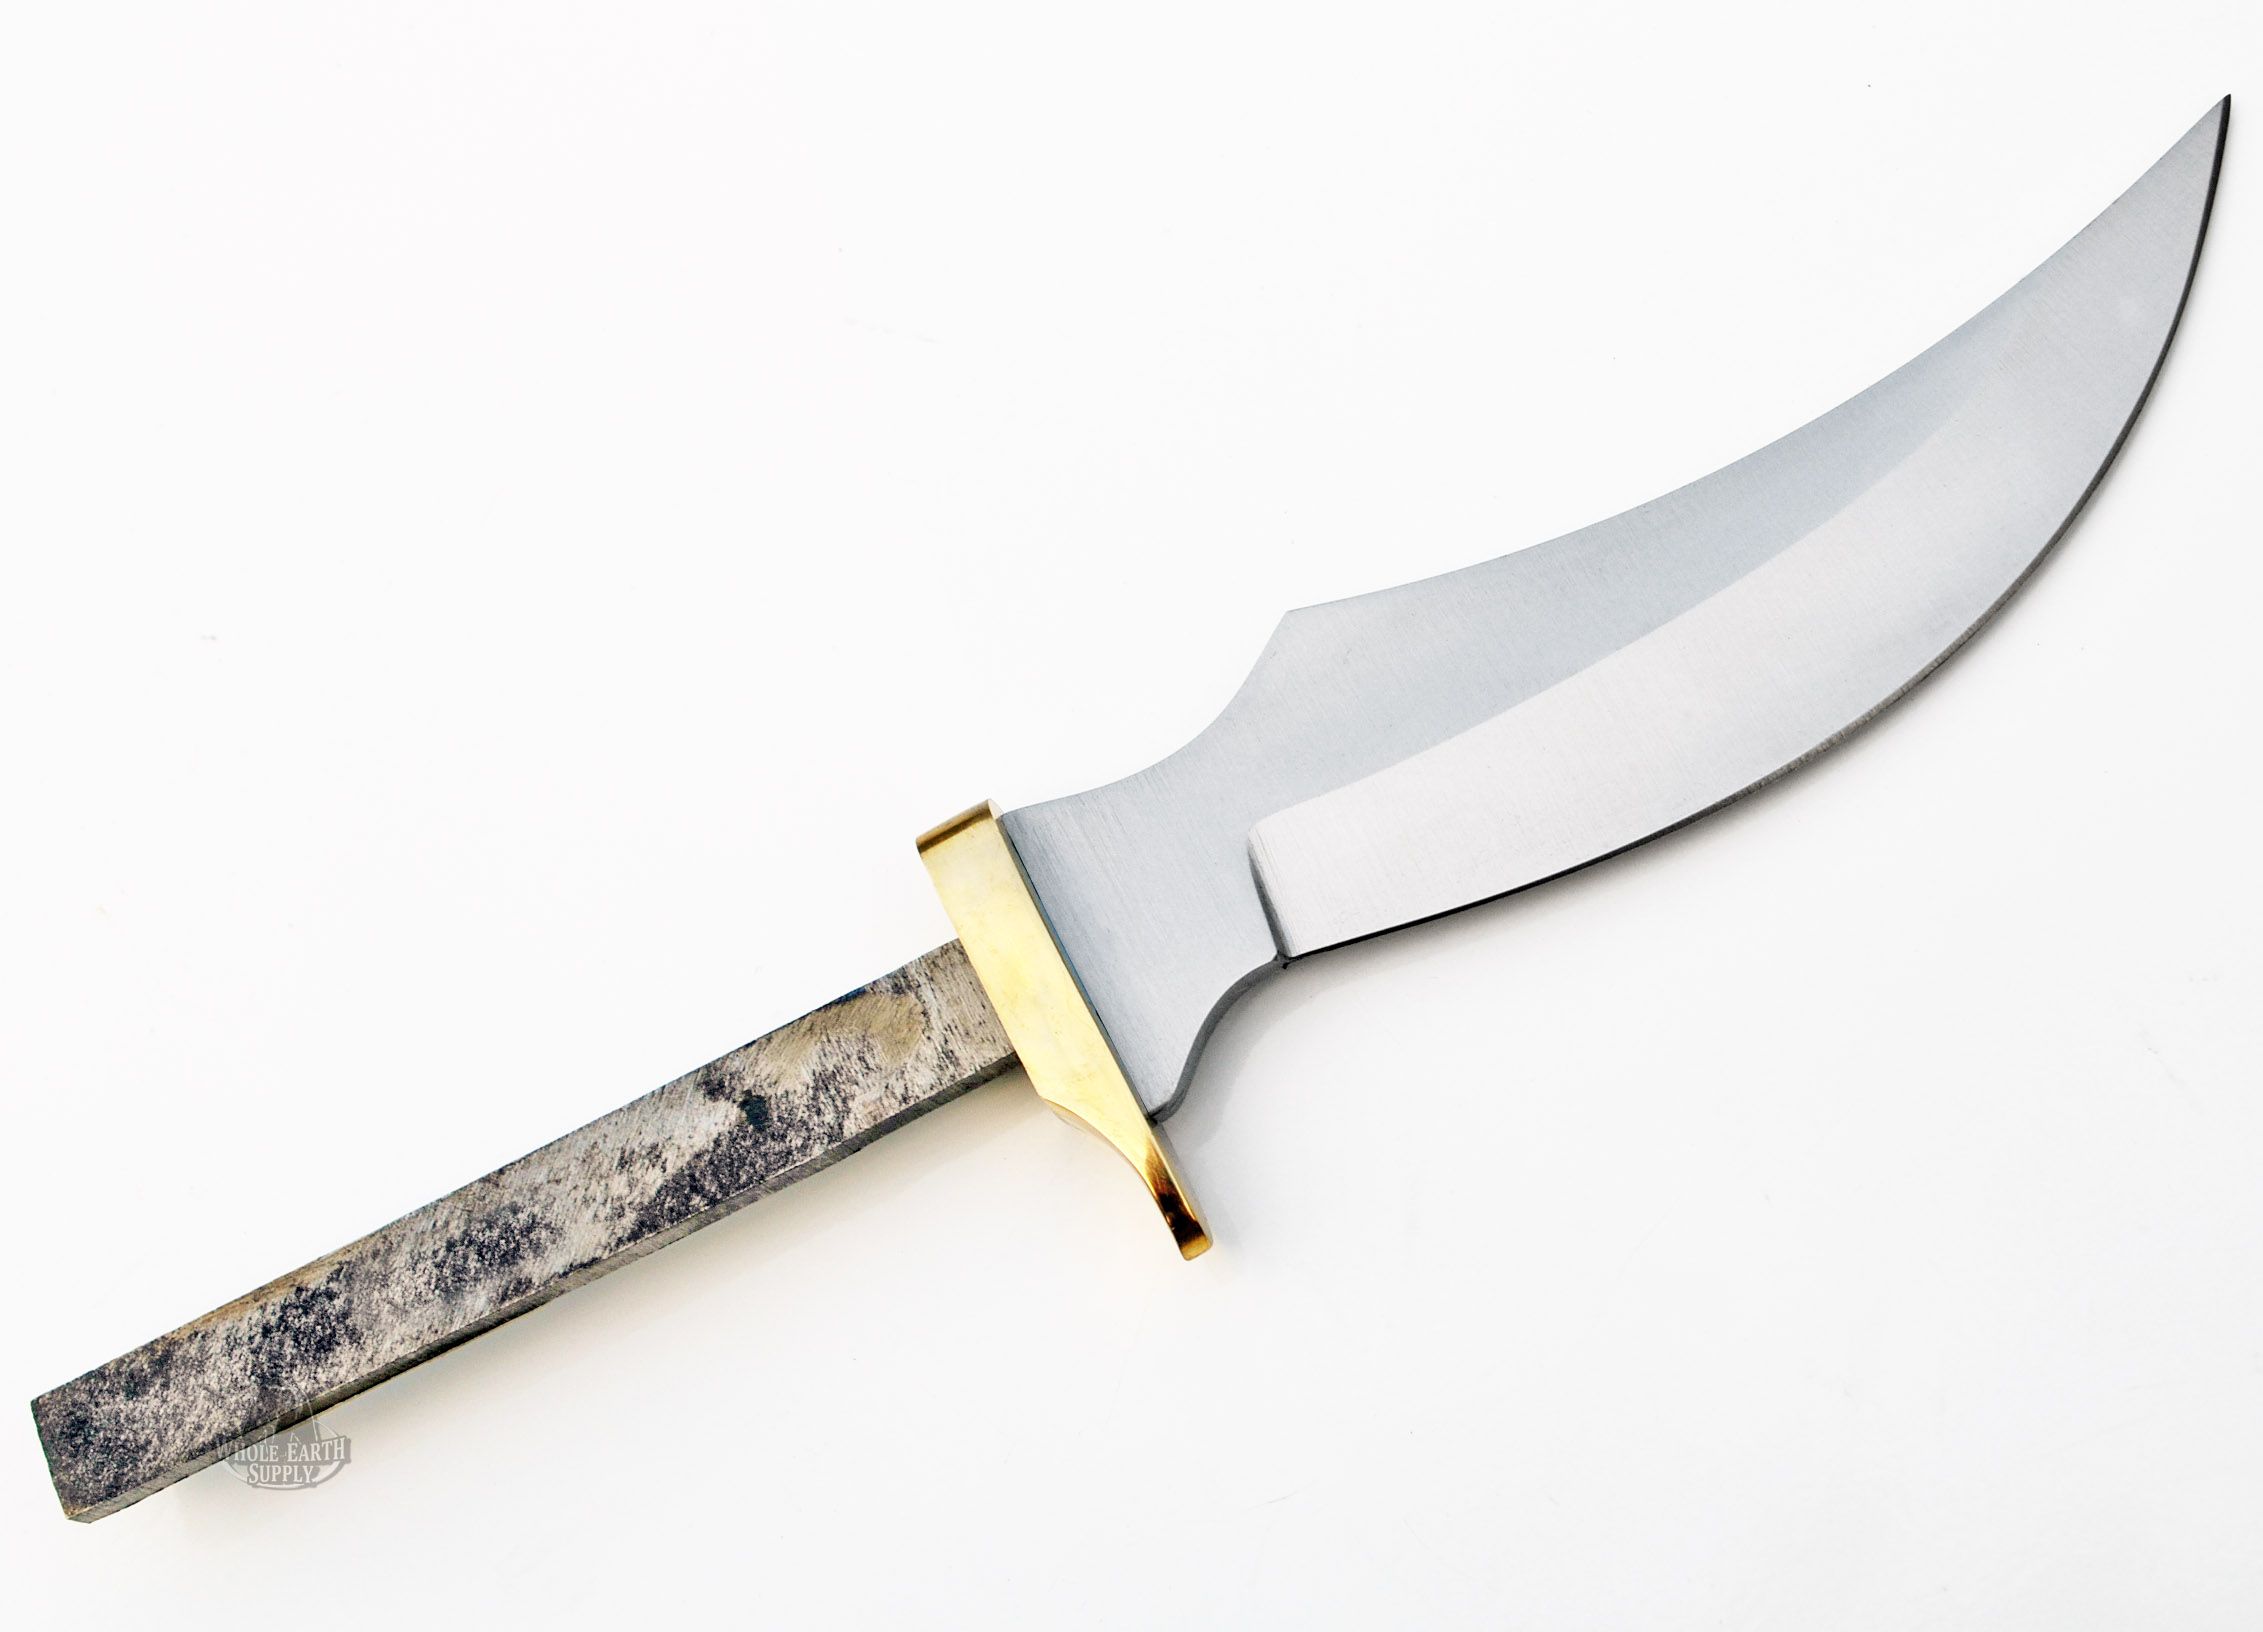 Clip Point Skinner Knife Making Blade Blank Blanks Blades Knives Custom 